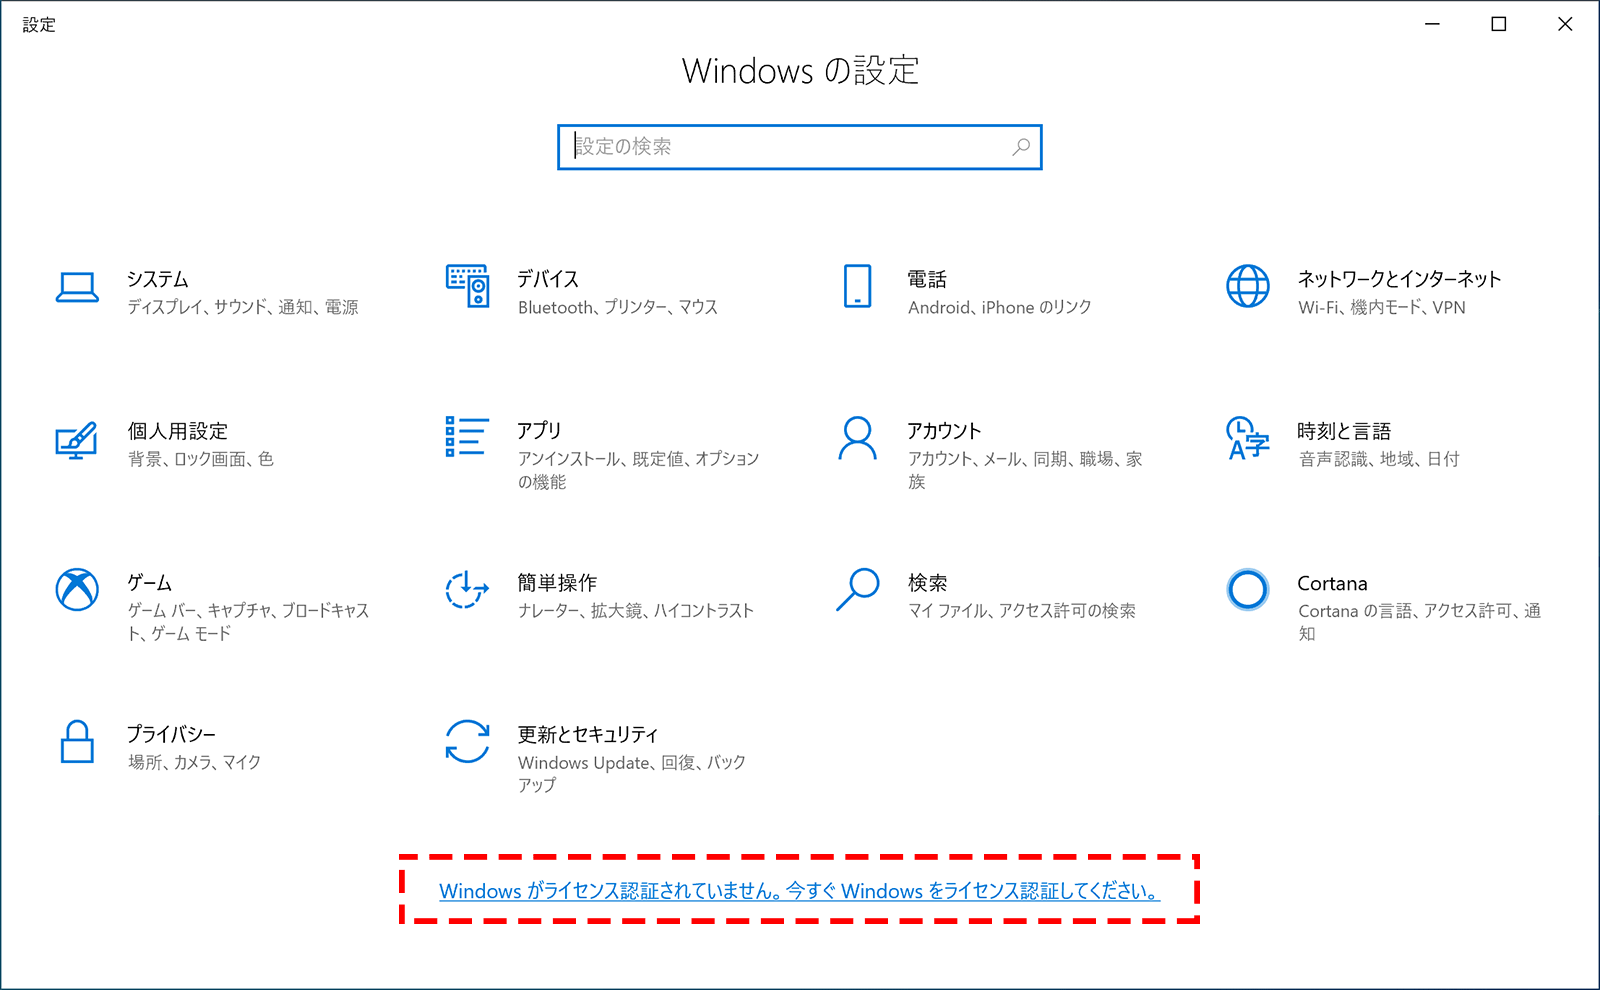 Windows 10を無料で使う。プロダクトキーは必要なし! - PCまなぶ